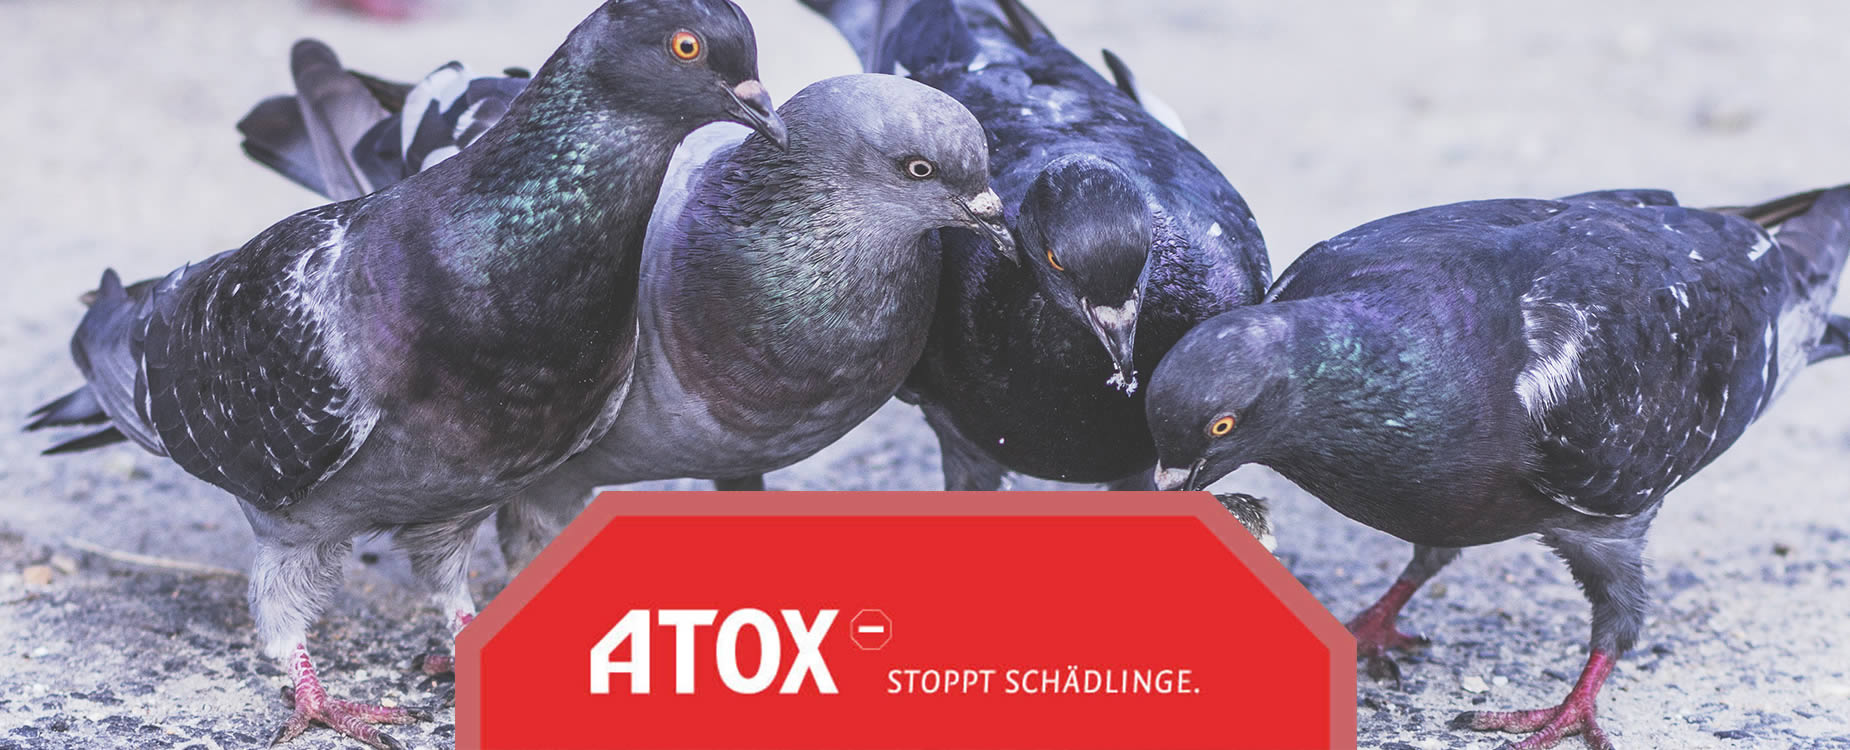 4 Tauben im Vordergrund - Logo und Claim: Stoppt Schädlinge im Vordergrund___